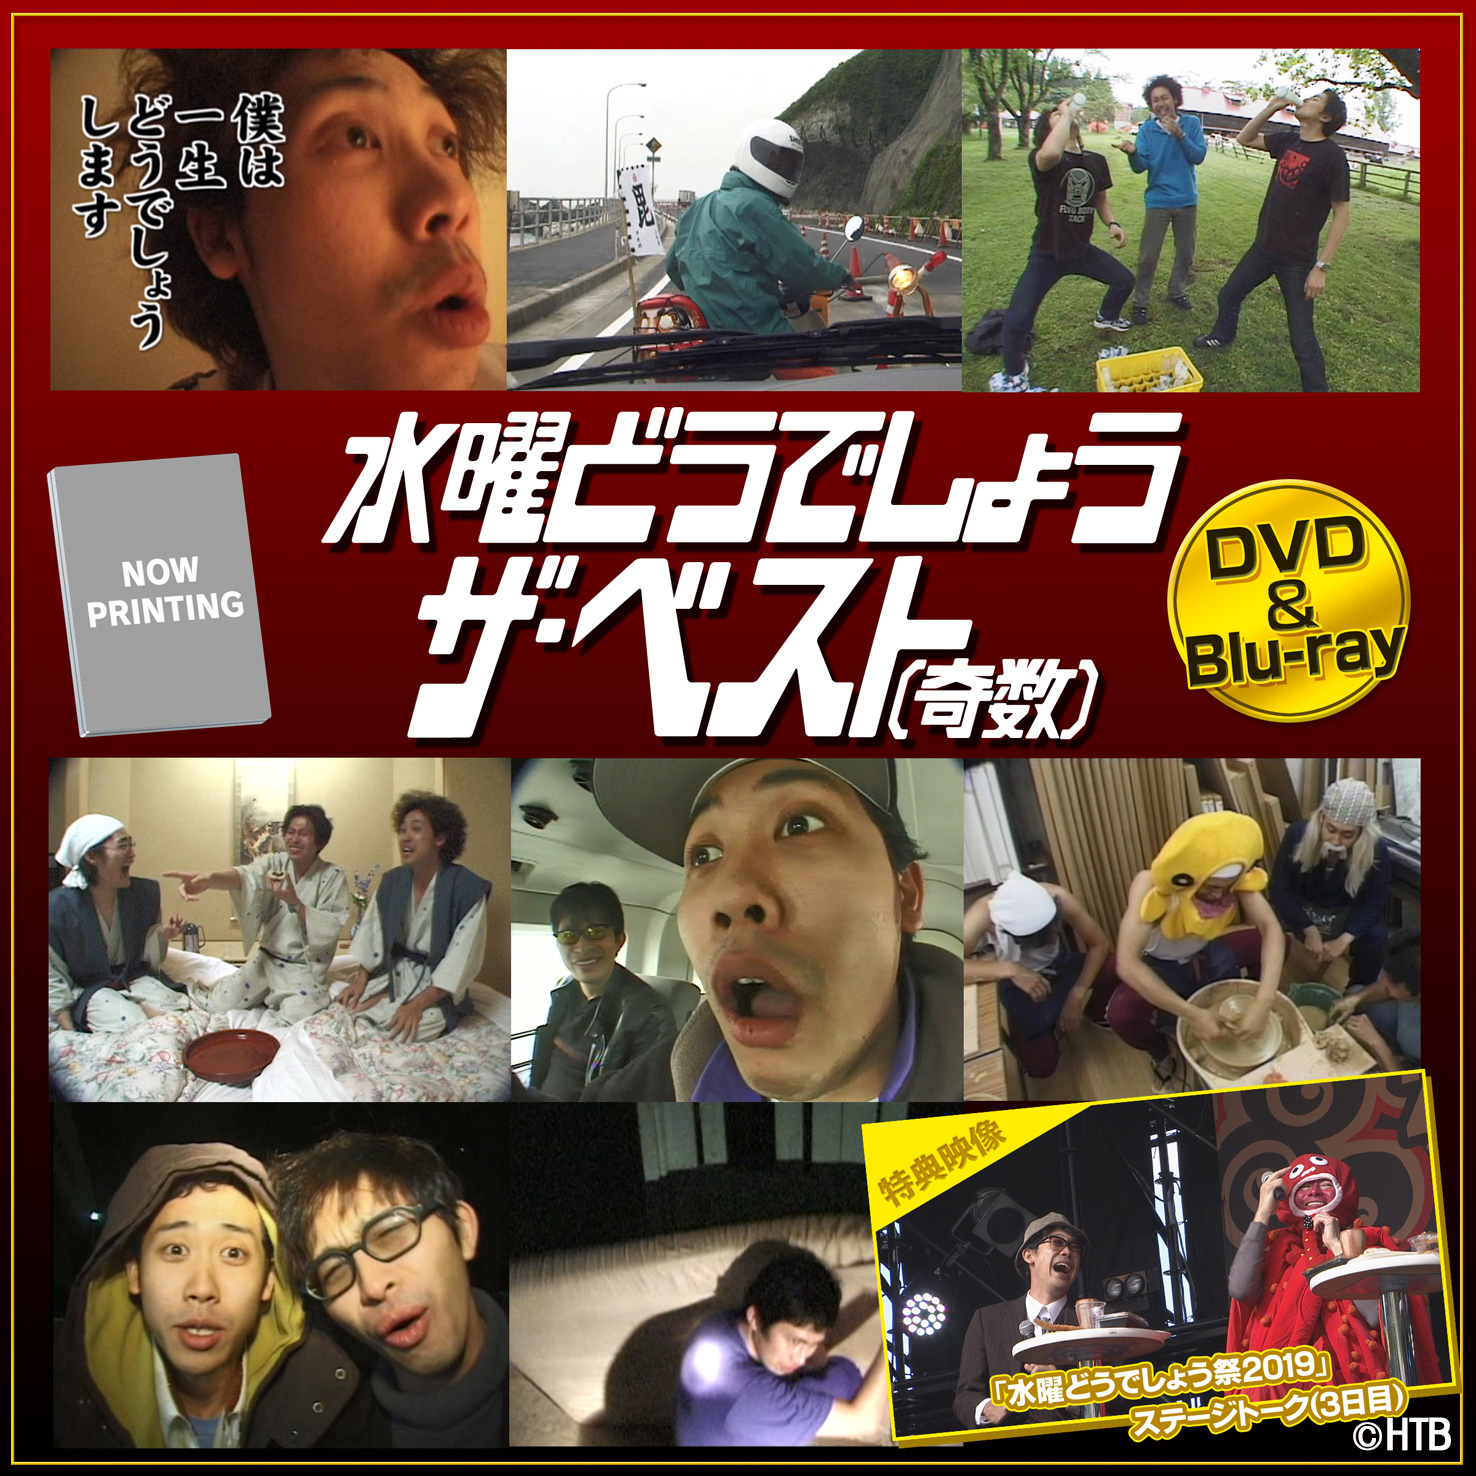 水曜日のダウンタウン DVD(1)～(8&9)初回限定特別版➕エルチキンライス